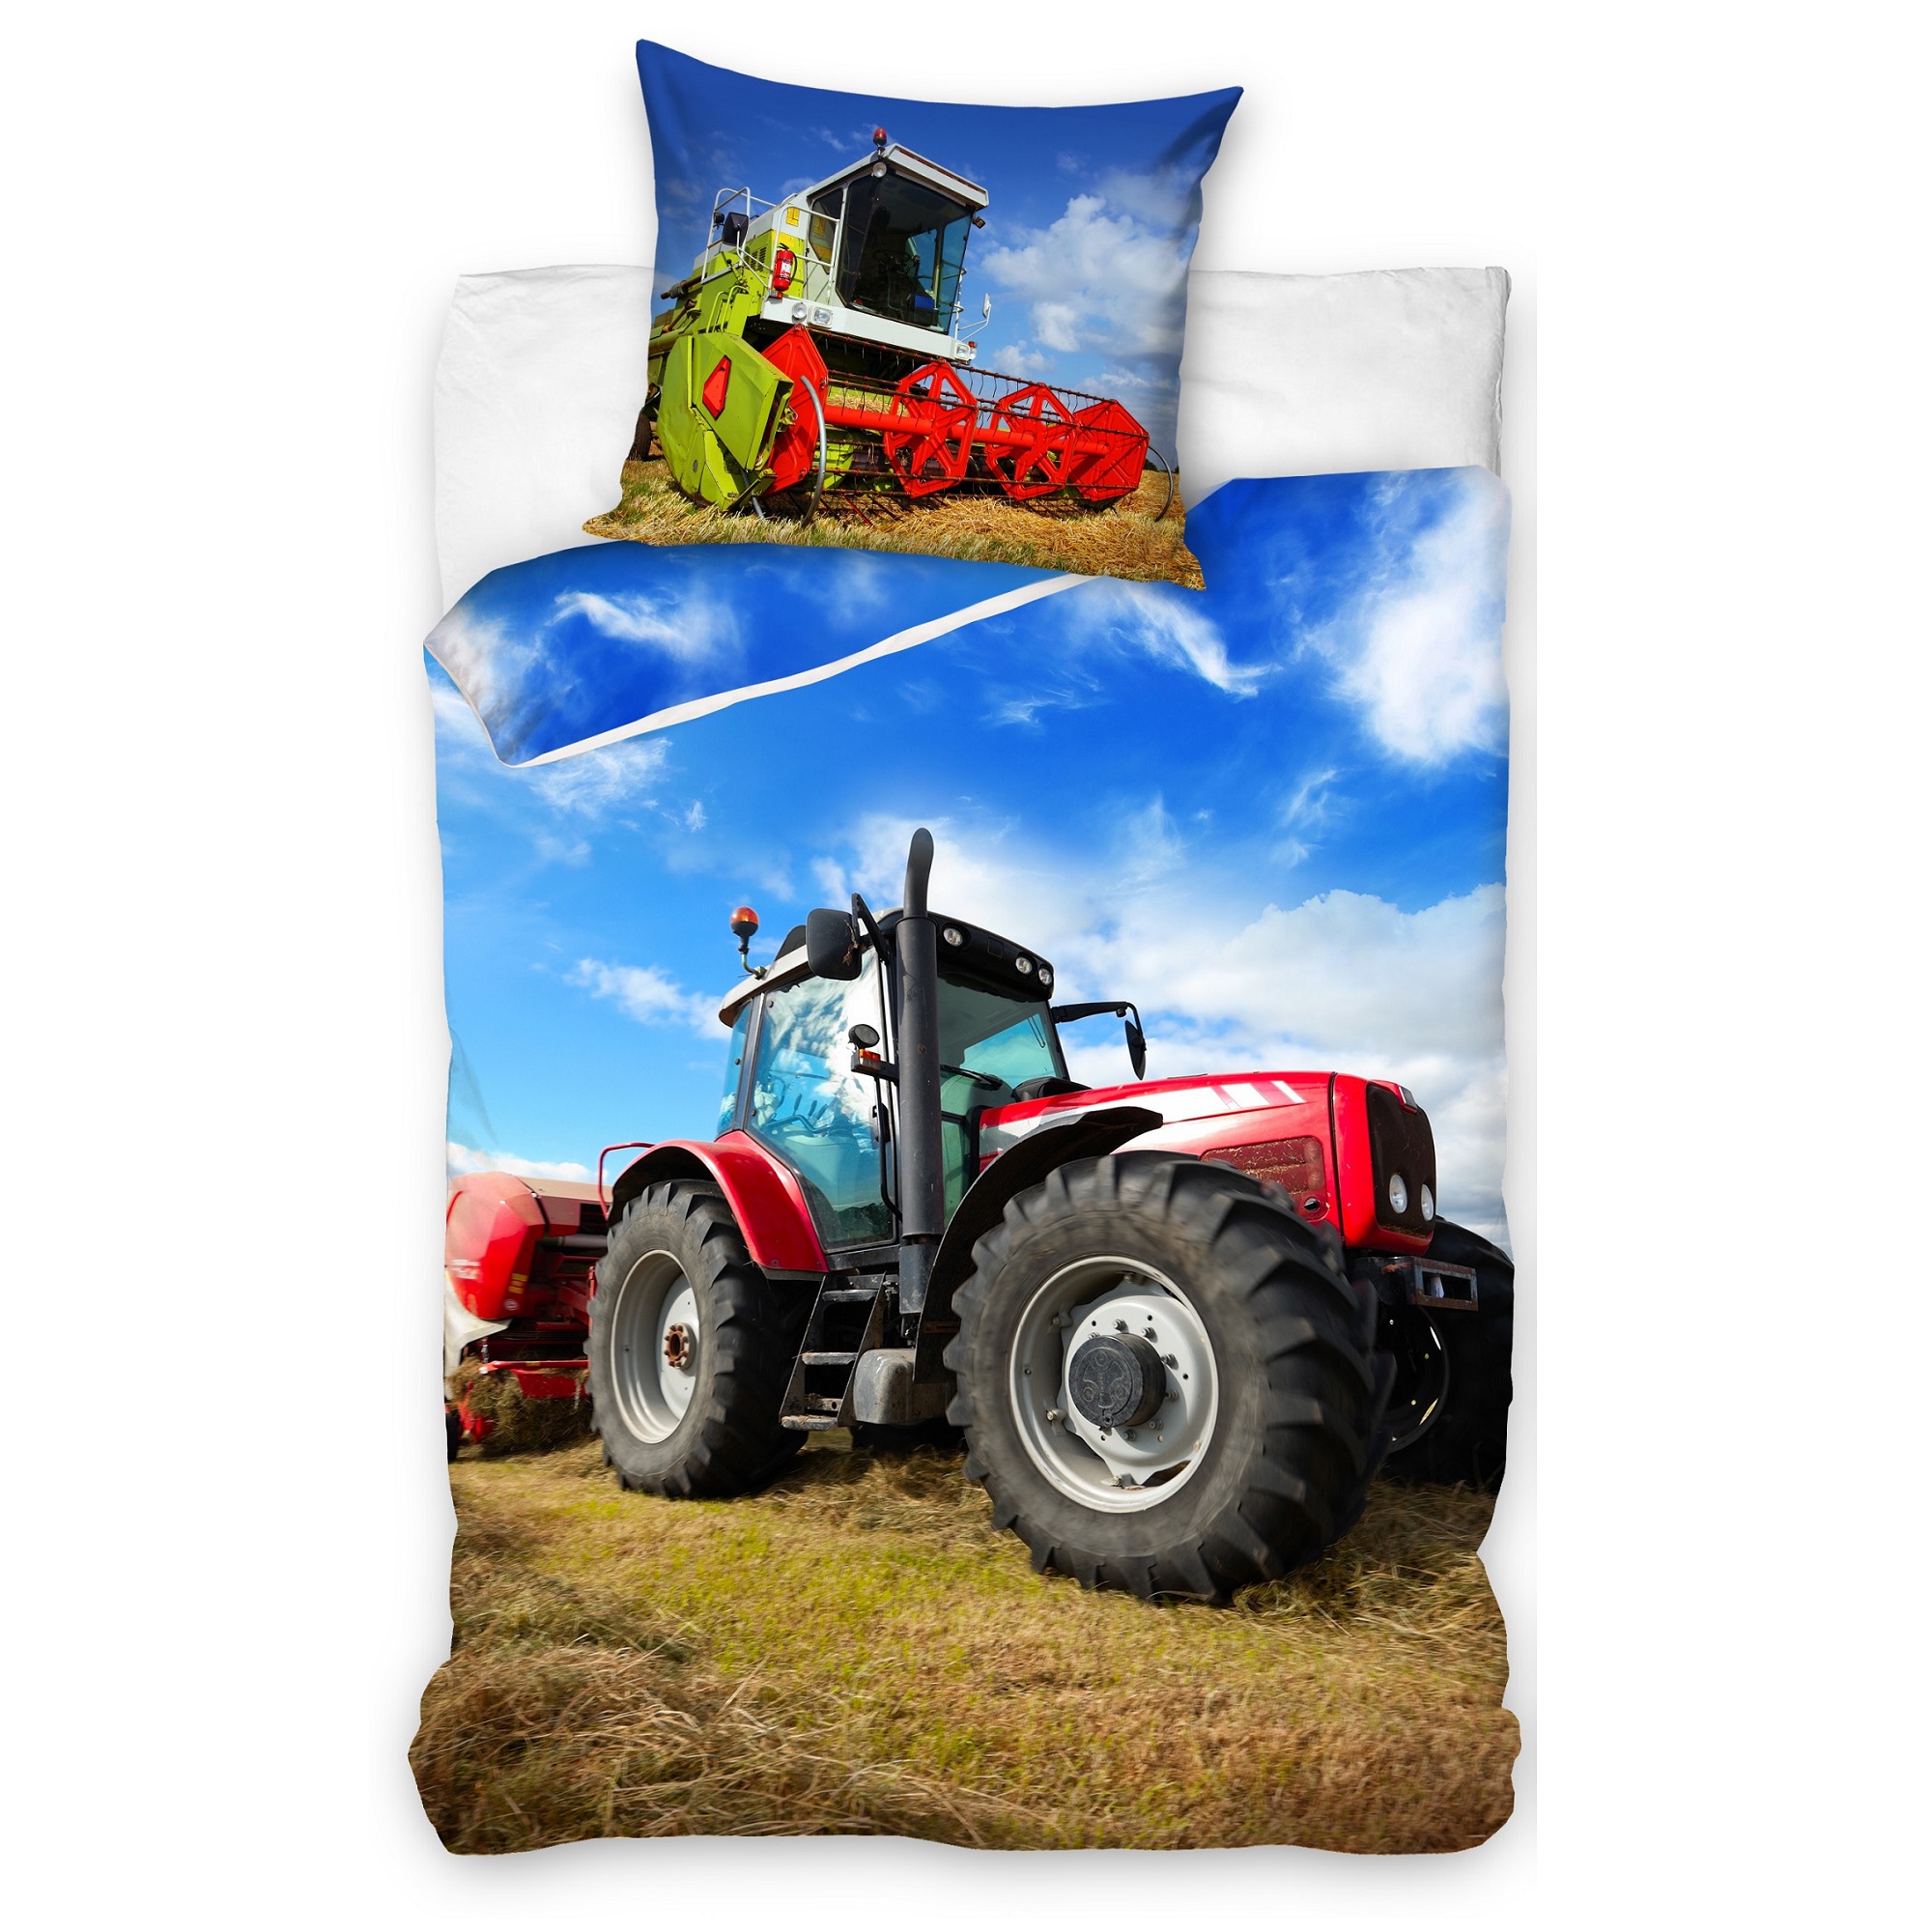 Vorderseite Bettwäsche mit rotem Traktor auf Bettdecke und grünem Mähdrescher auf Kopfkissen